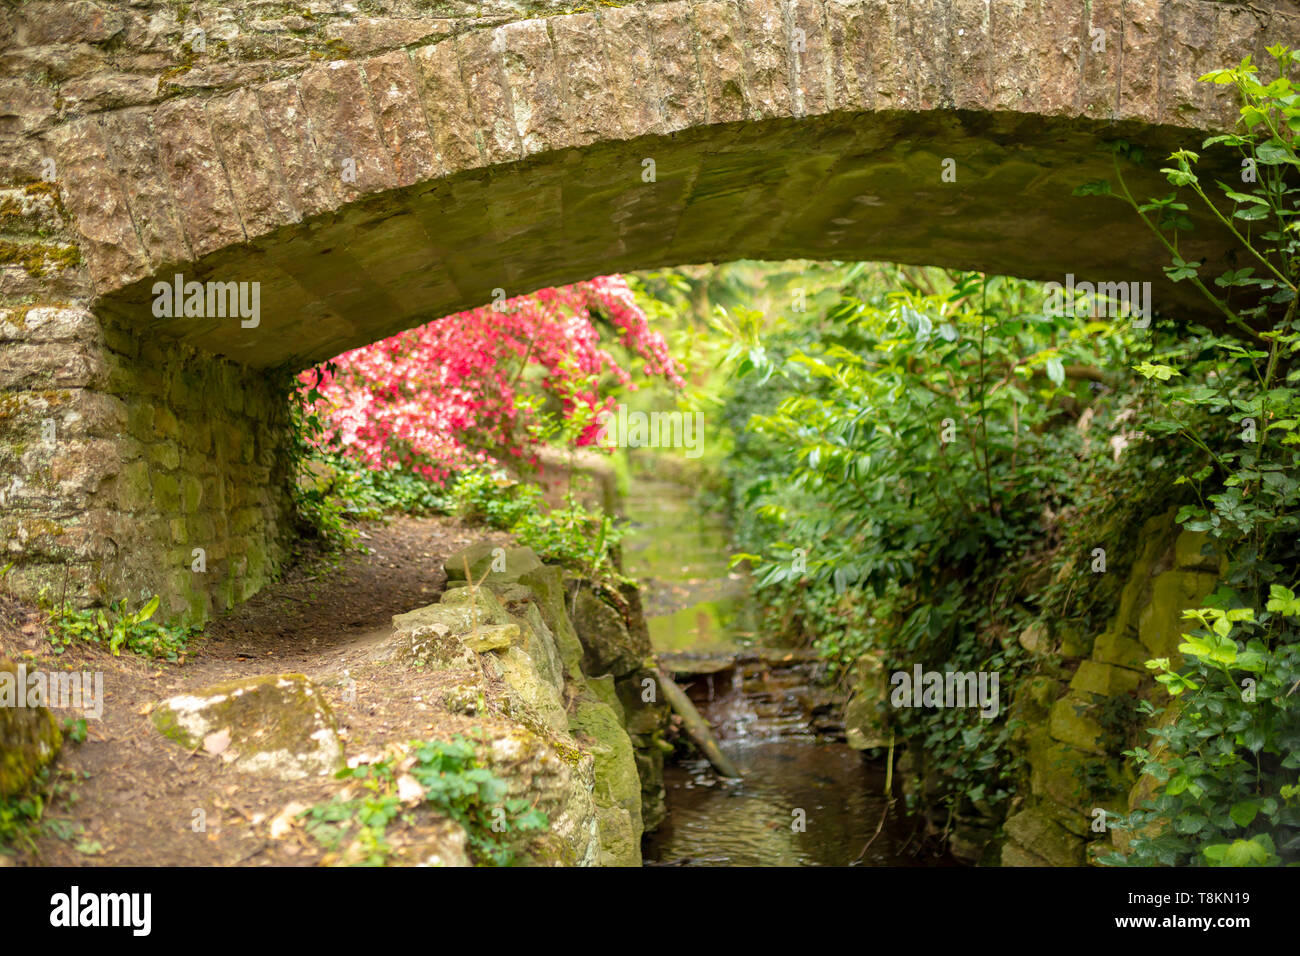 Selektiver Fokus Farbfoto konzentrierte sich auf alte steinerne Brücke mit Rosa azaelea und stream im Hintergrund. Branksome chine Gärten, Poole, Dorset, Engl Stockfoto